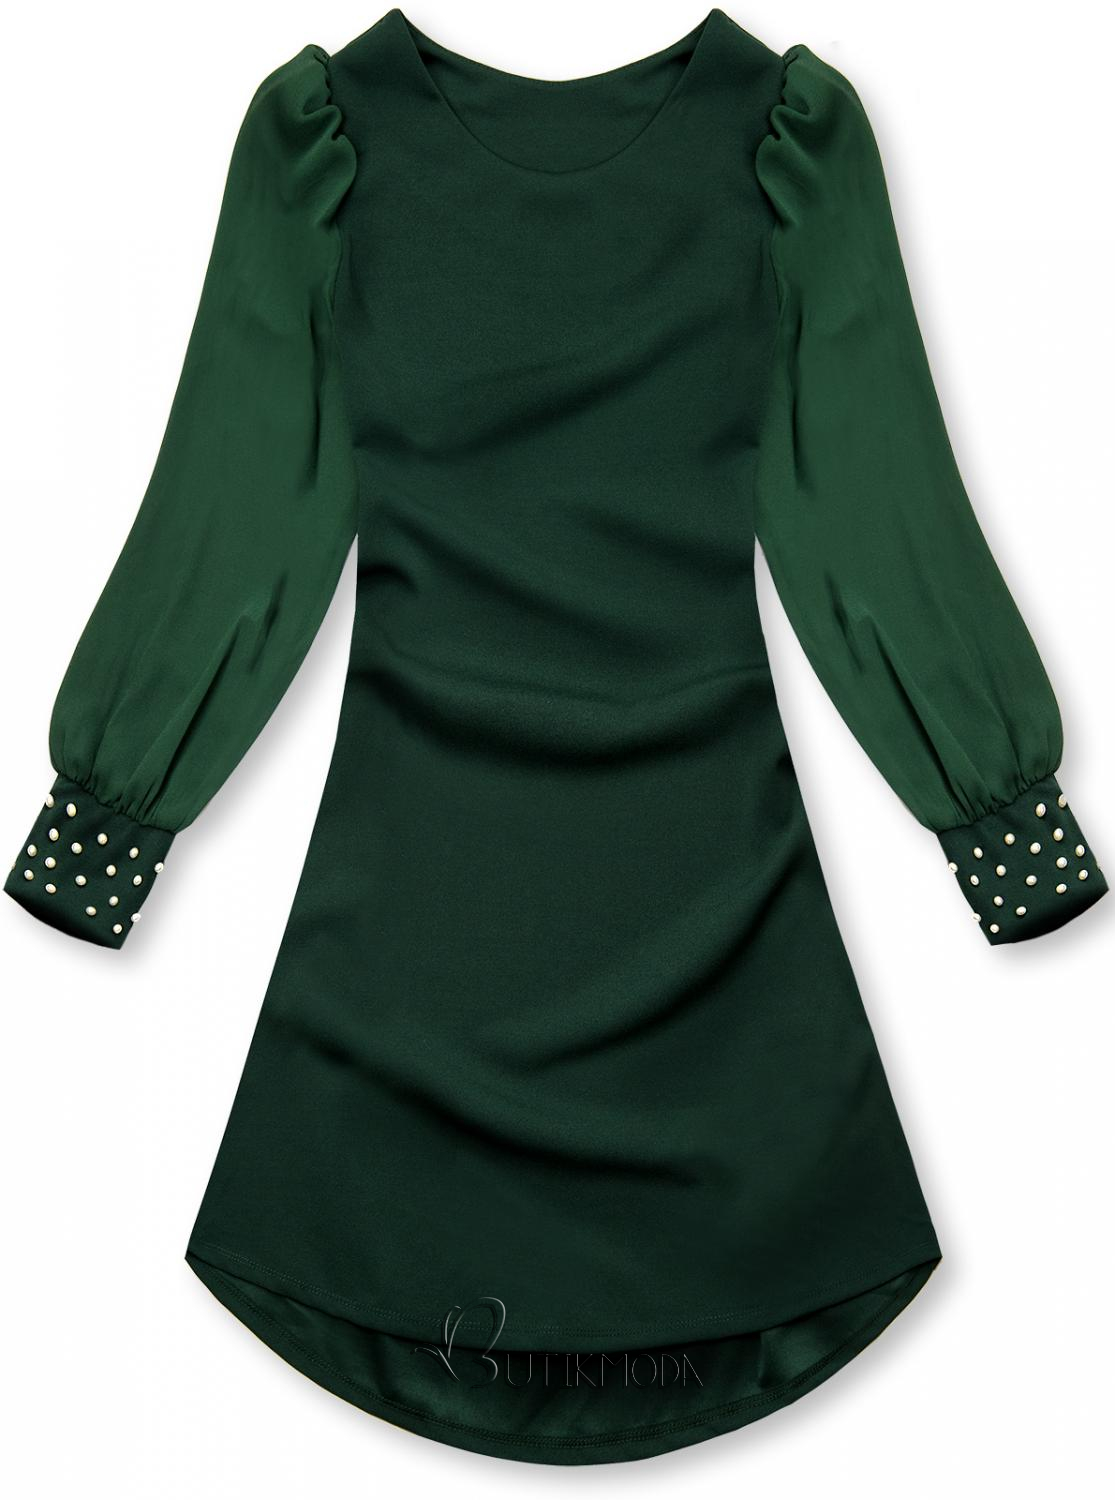 Kleid mit Perlen-Verzierung am Ärmel grün